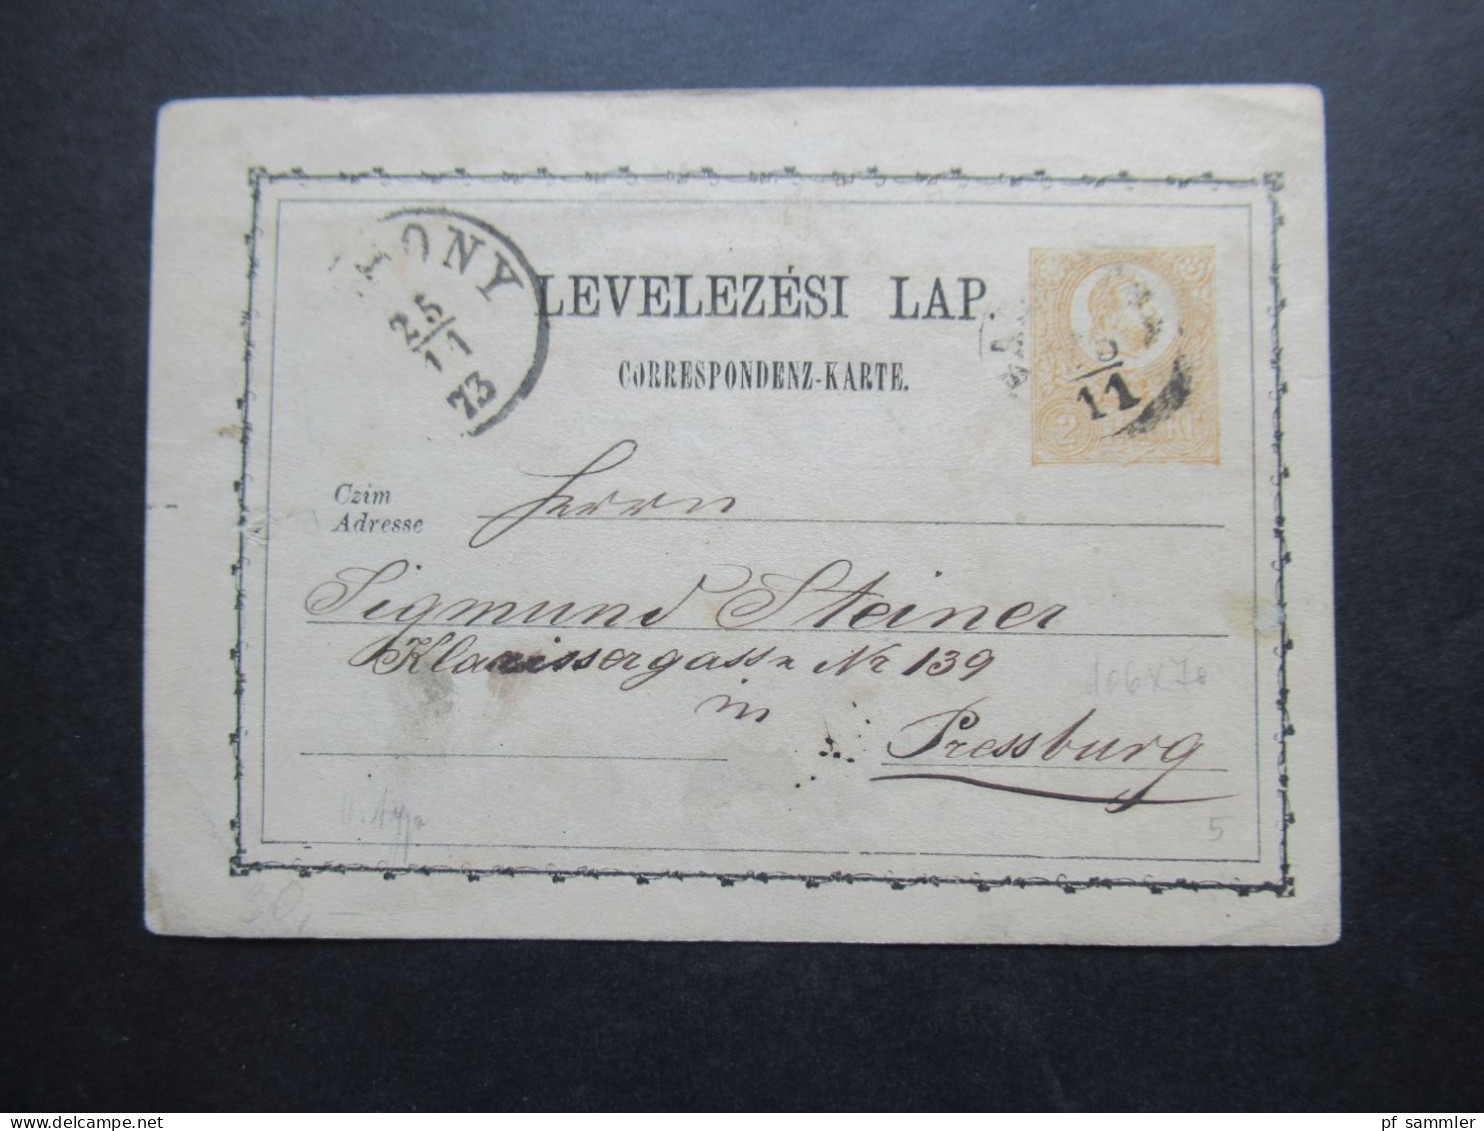 Ungarn Ganzsache Correspondenz Karte 25.11.1873 Nach Pressburg Gesendet - Ganzsachen